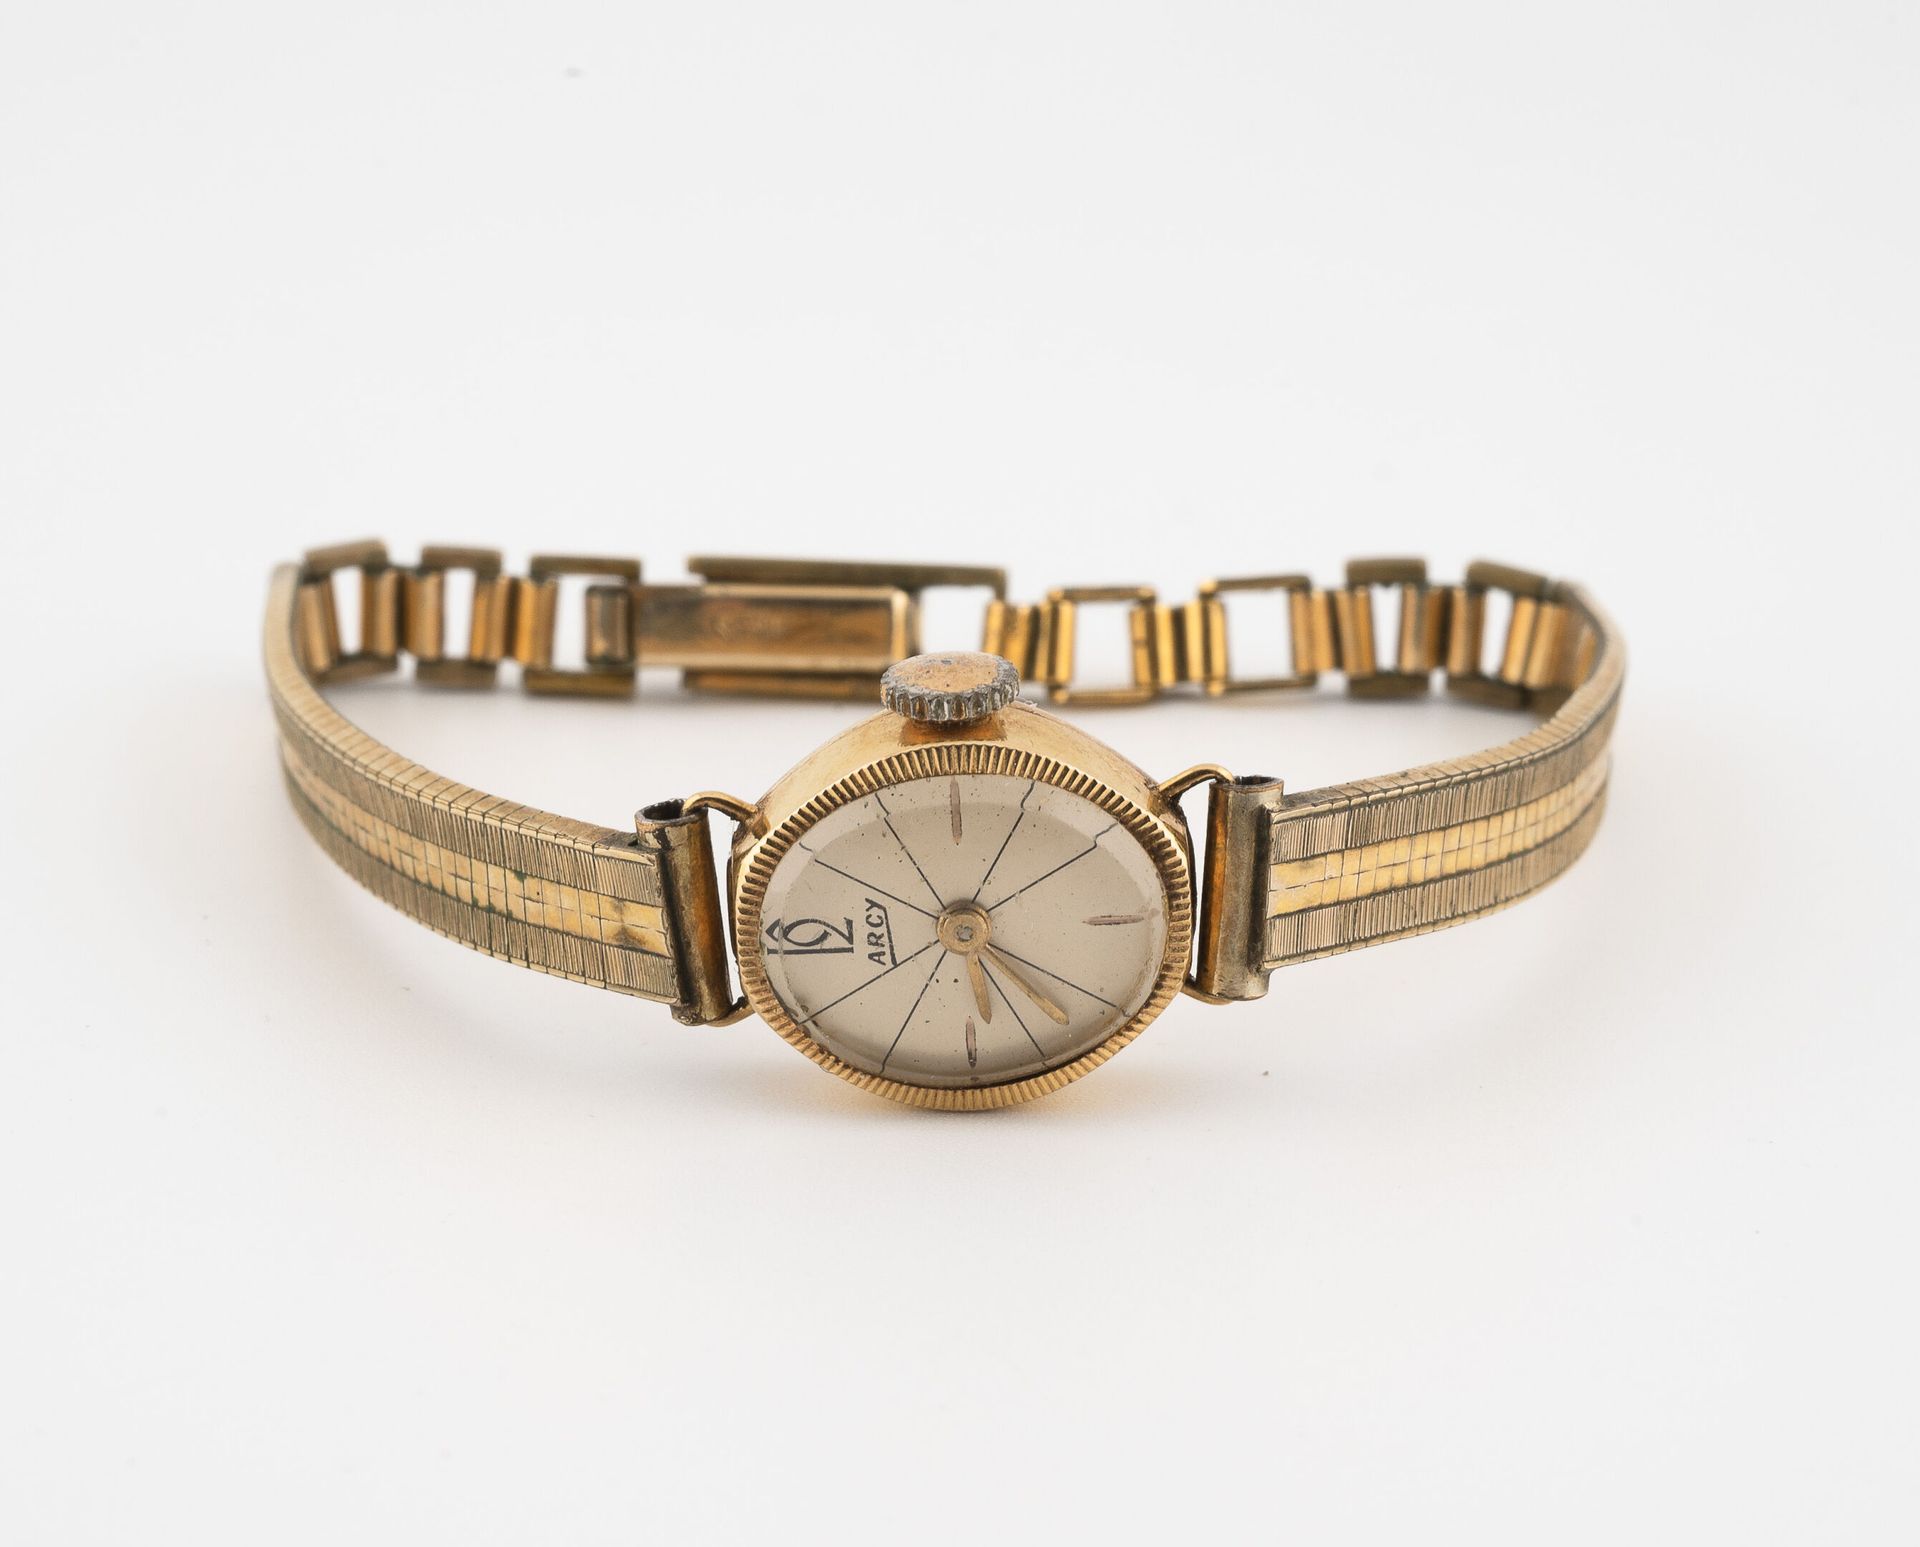 ARCY Armbanduhr für eine Dame.

Gehäuse aus Gelbgold (750). 

Zifferblatt mit cr&hellip;